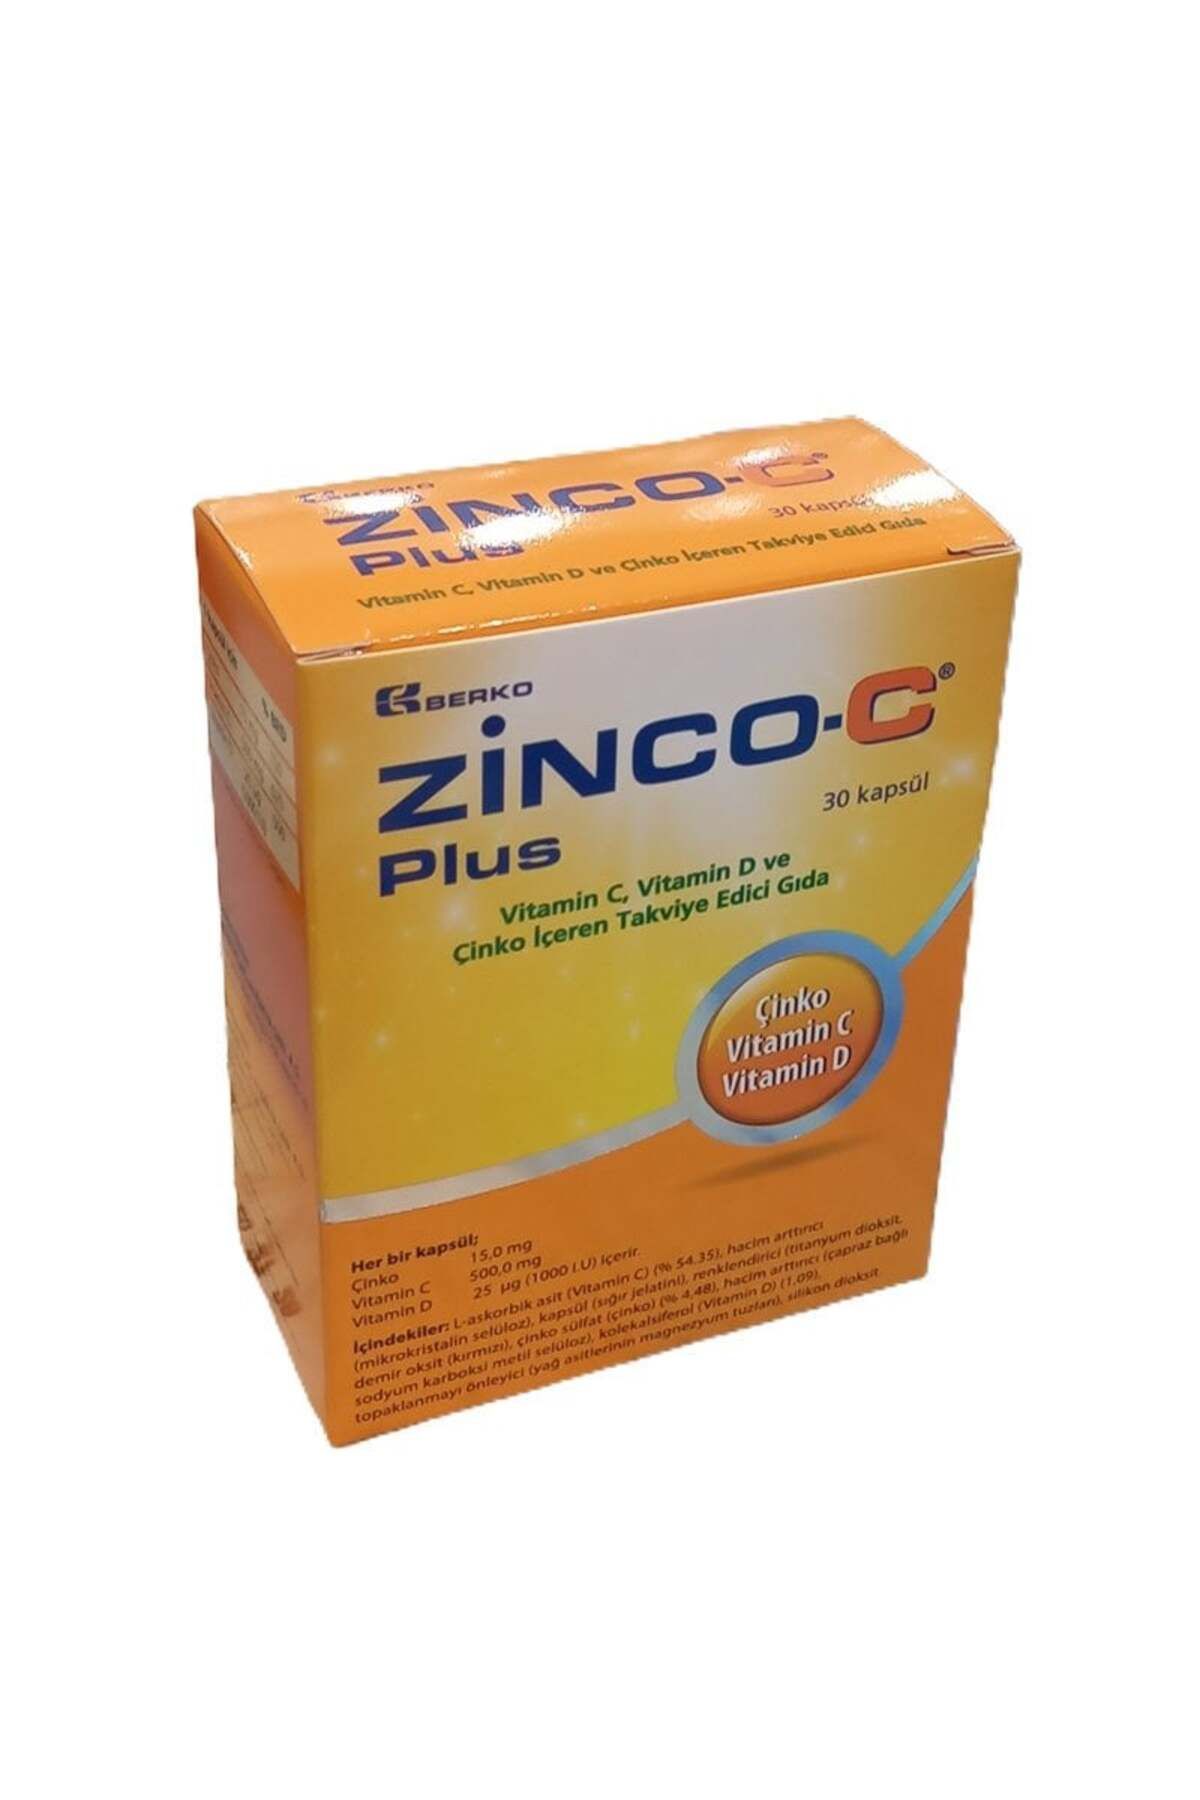 Zinco-C Plus Vitamin C, Vitamin D Ve Çinko Içerikli 30 Kapsül